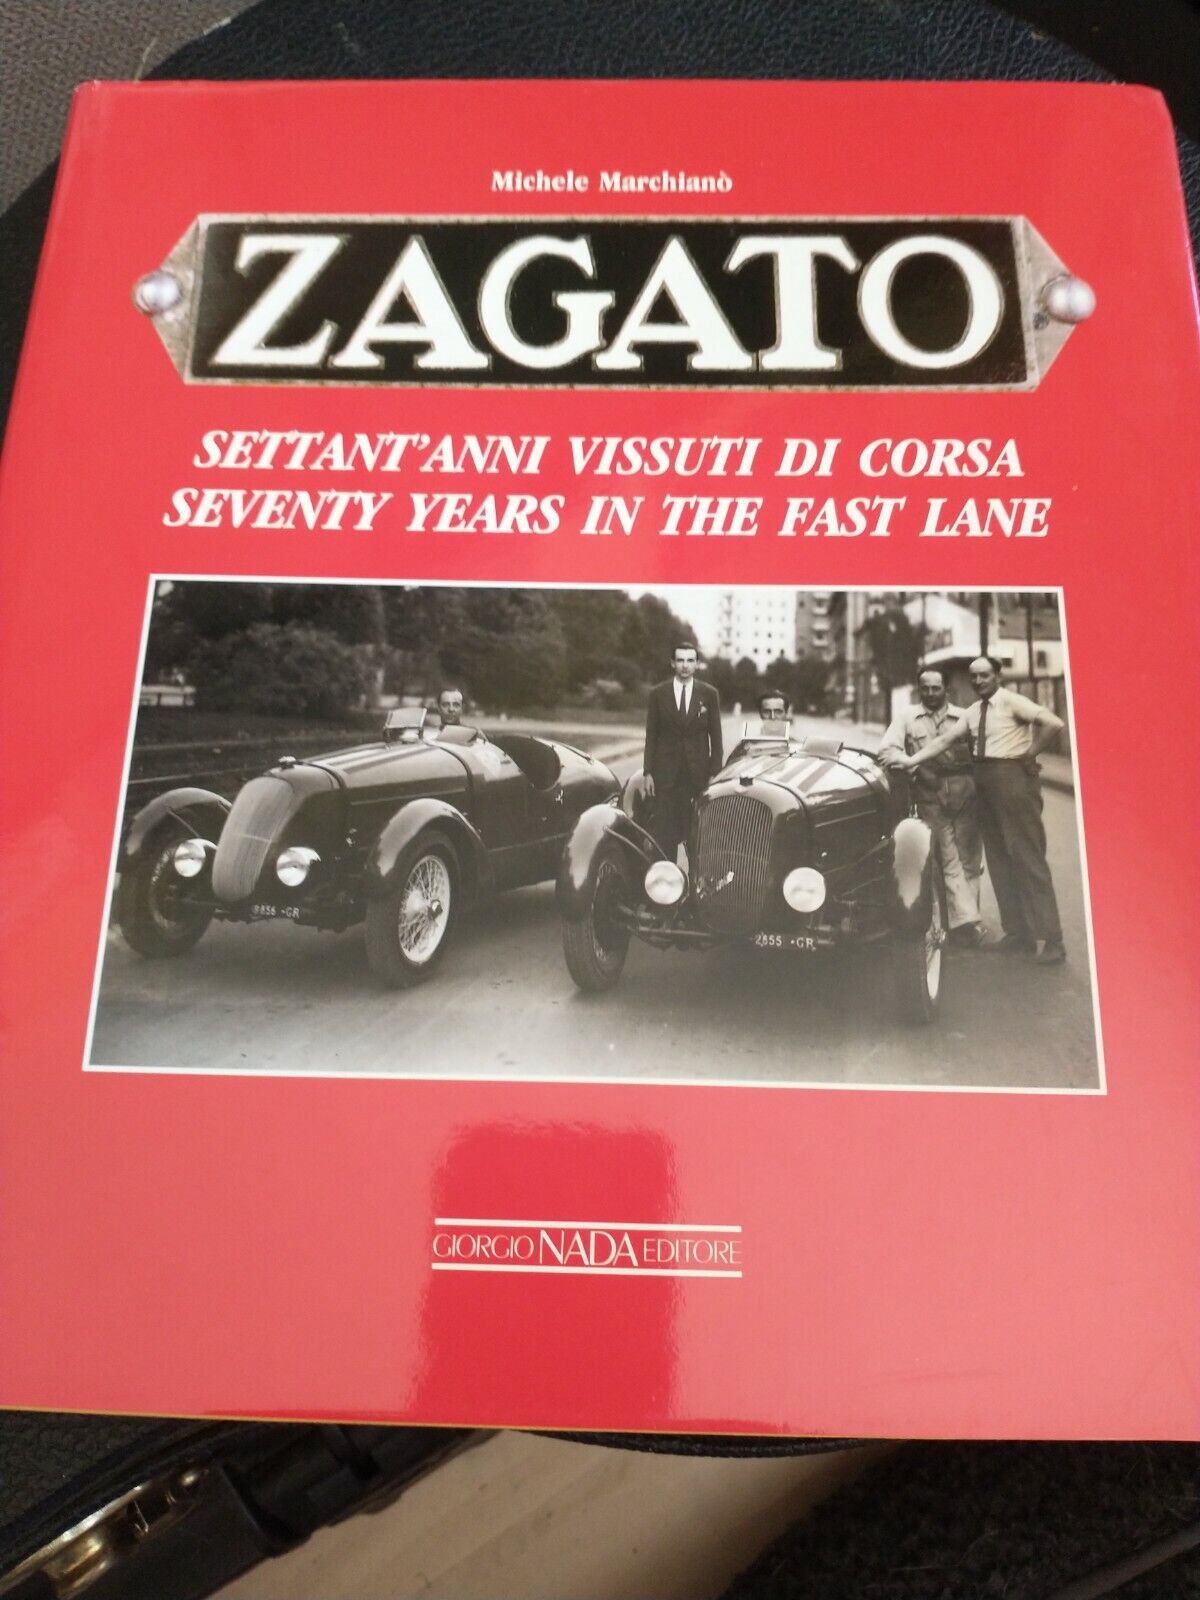 Zagato: Seventy Years in the Fast Lane book Michele Marchiano, 1989 Alfa Ferrari